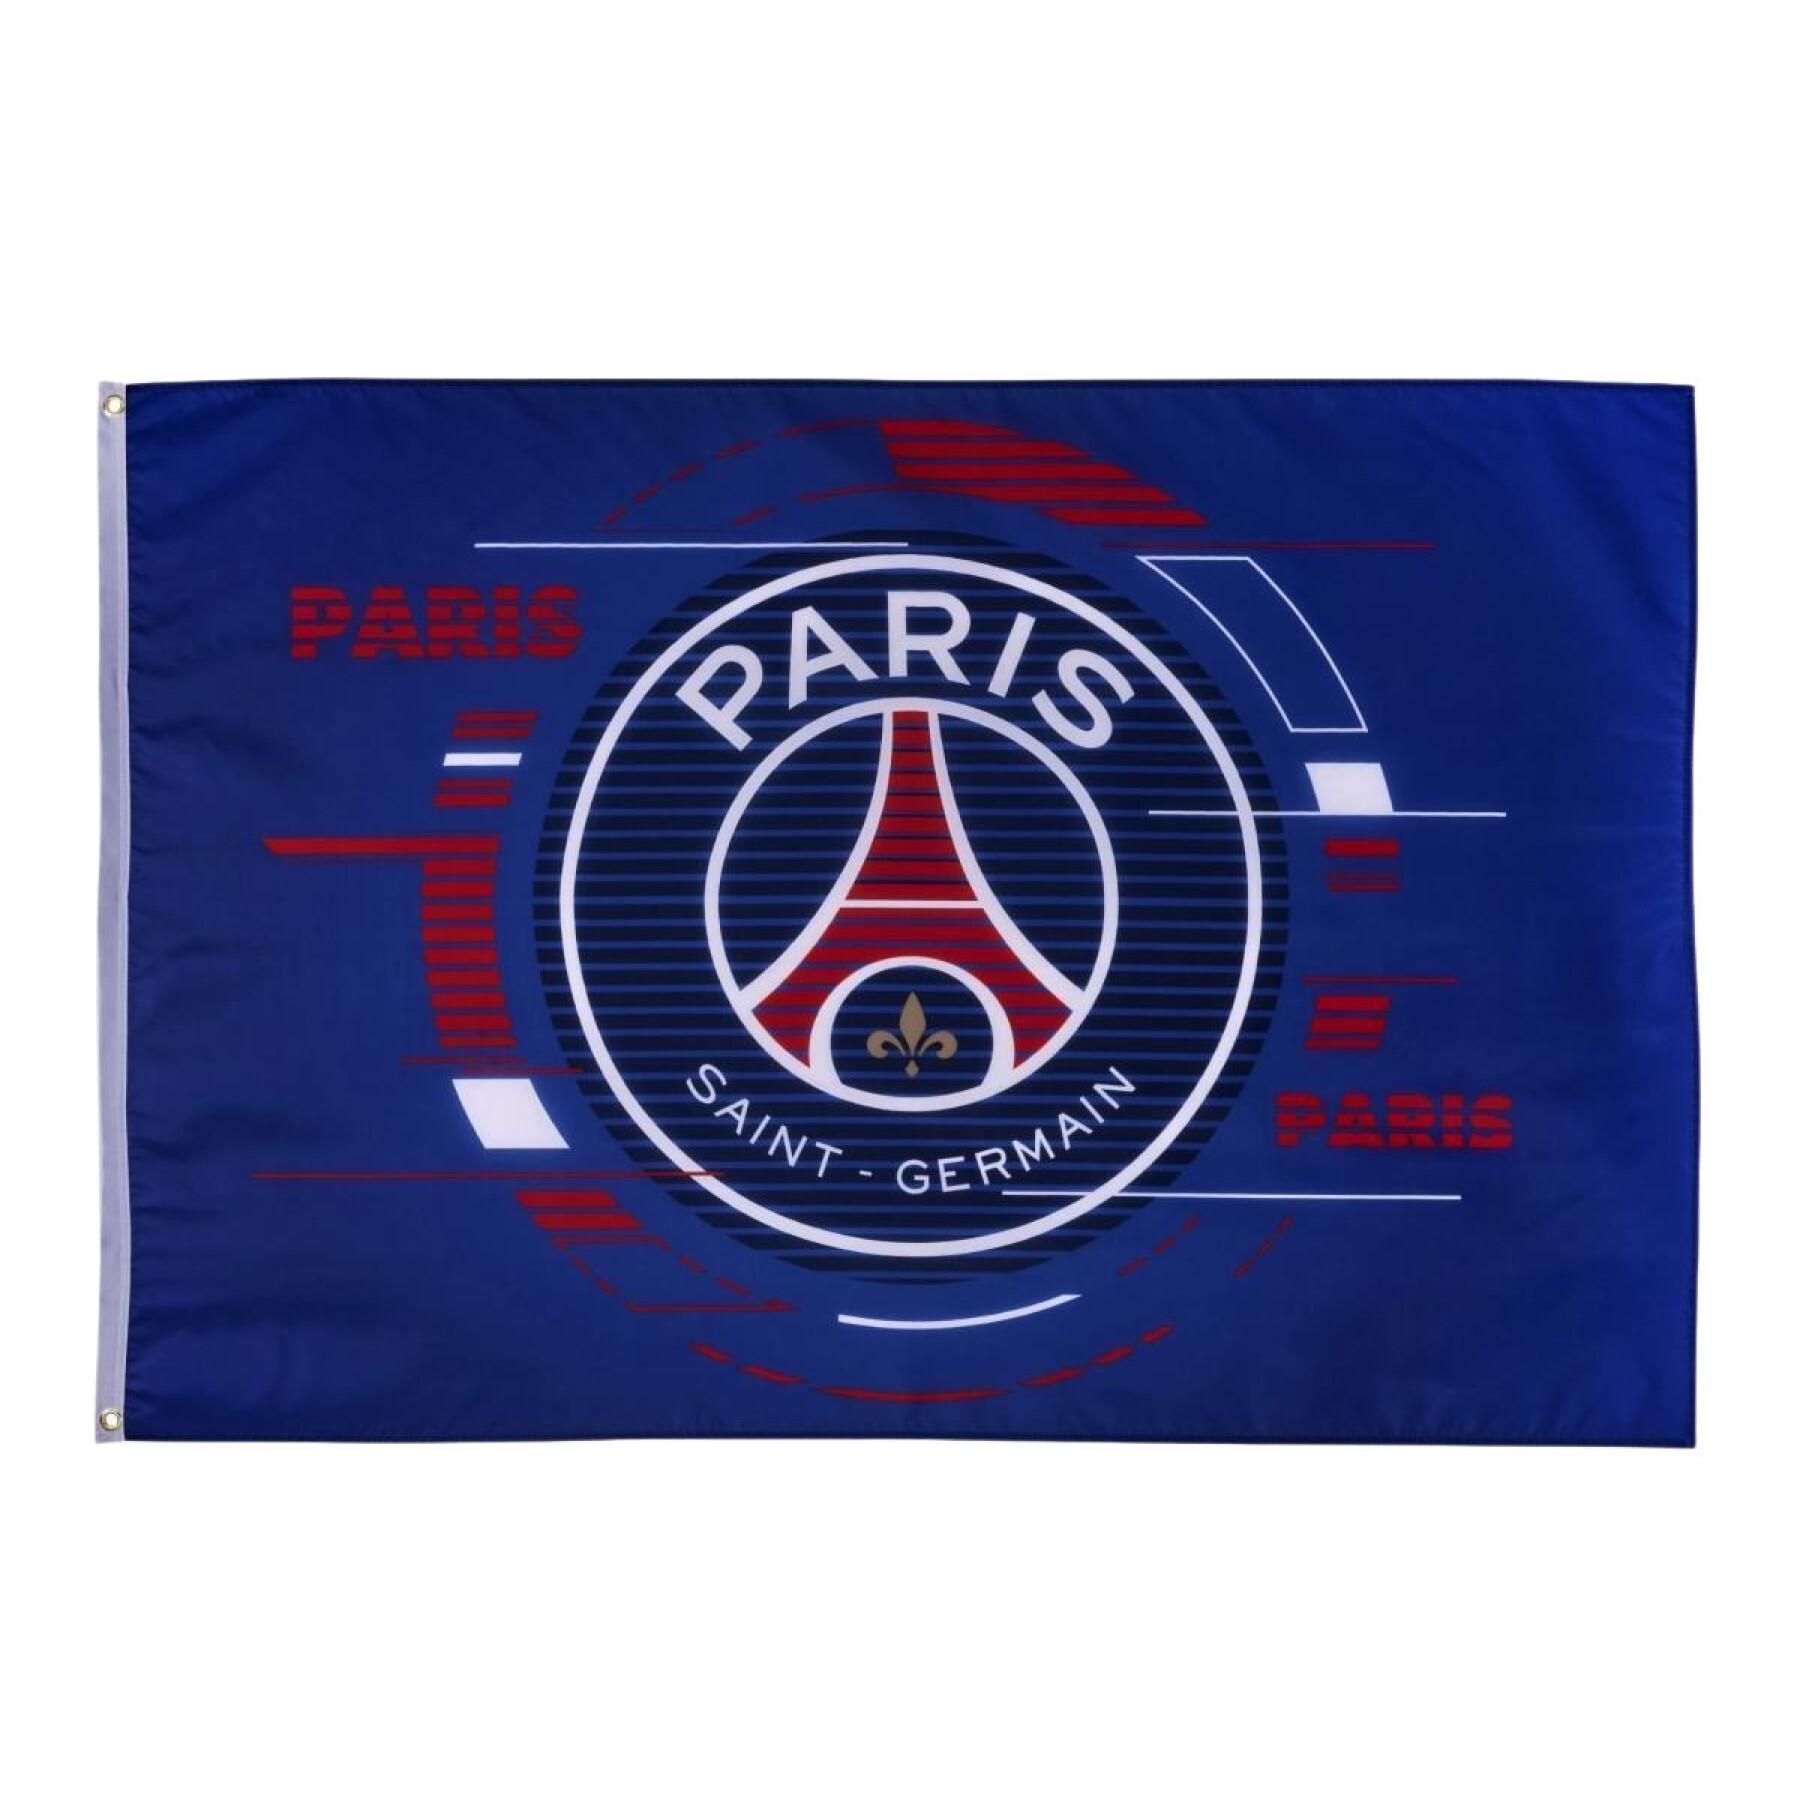 Bandeira grande logotipo paris saint-germain 2021/22